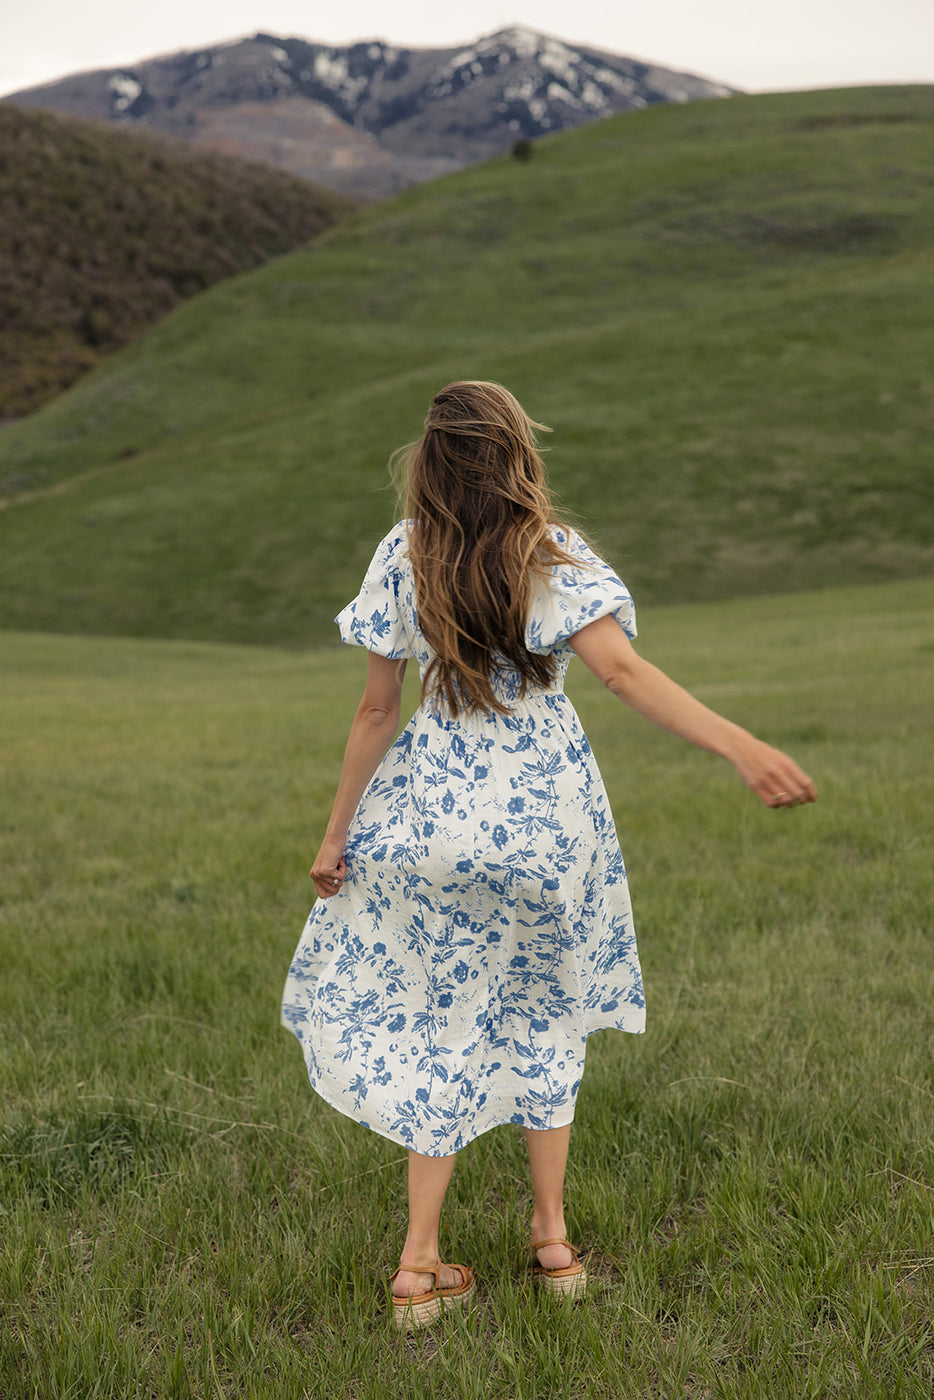 a woman in a dress walking in a grassy field